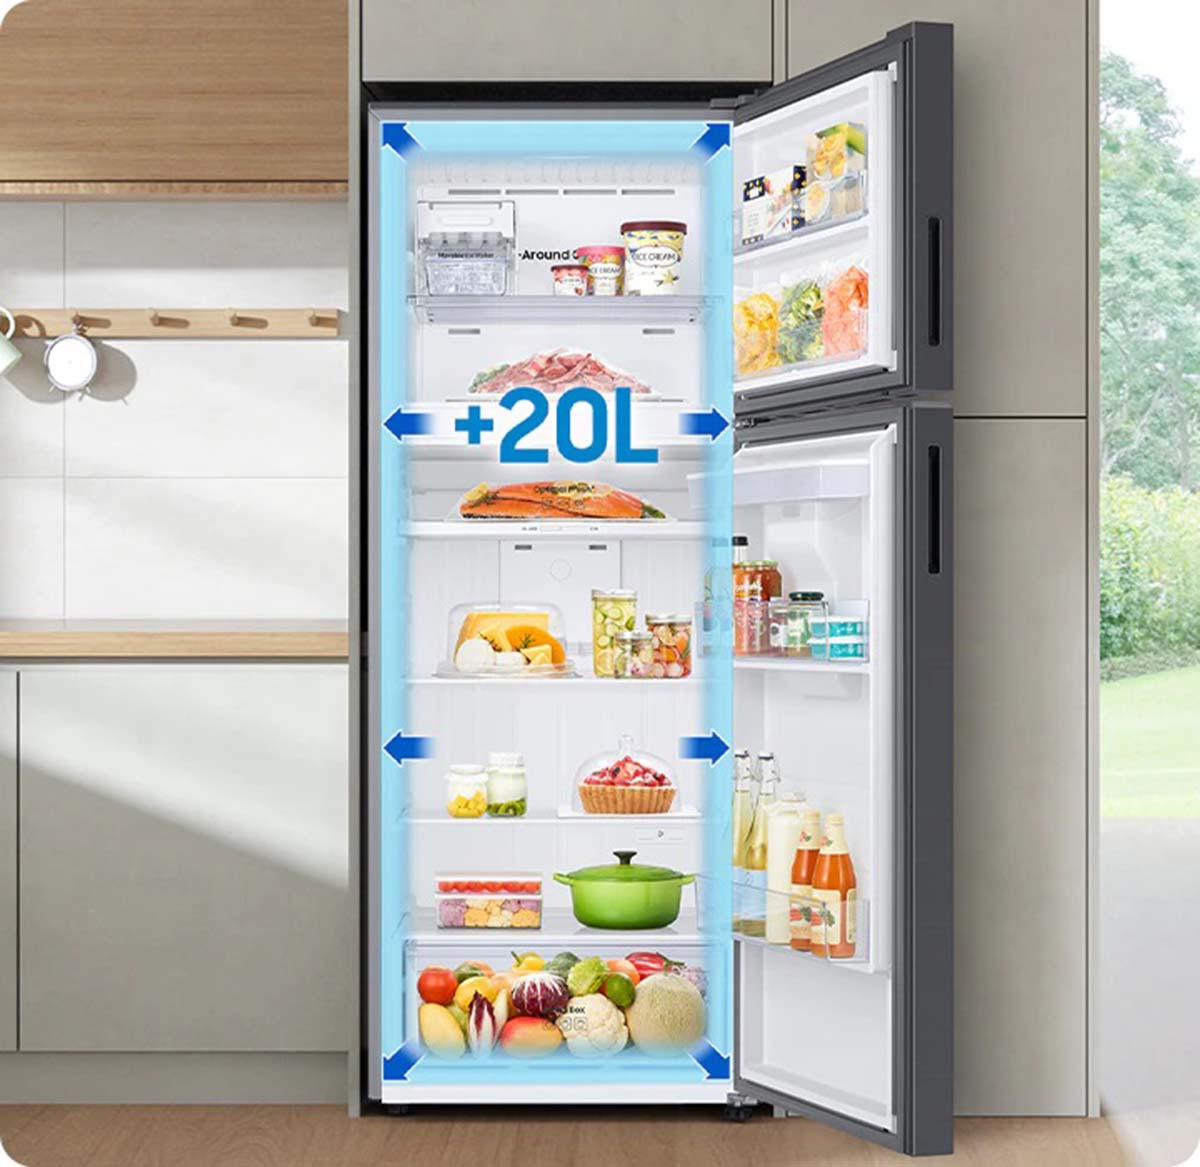 Tủ lạnh Samsung 305L RT31CG5424S9